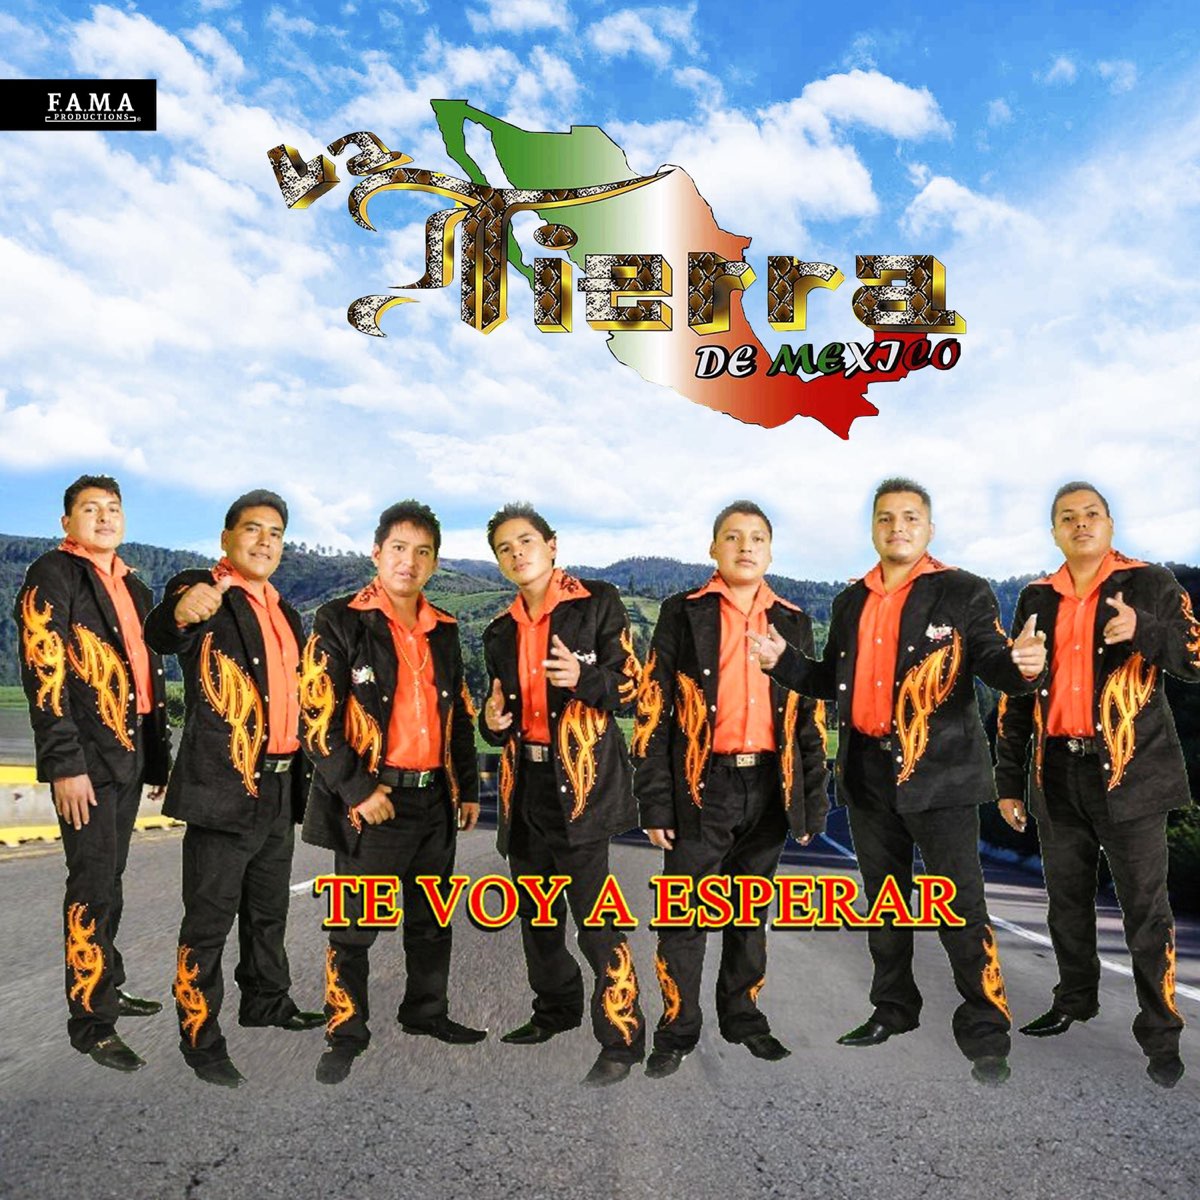 Te Voy a Esperar - Album by La Tierra De Mexico - Apple Music